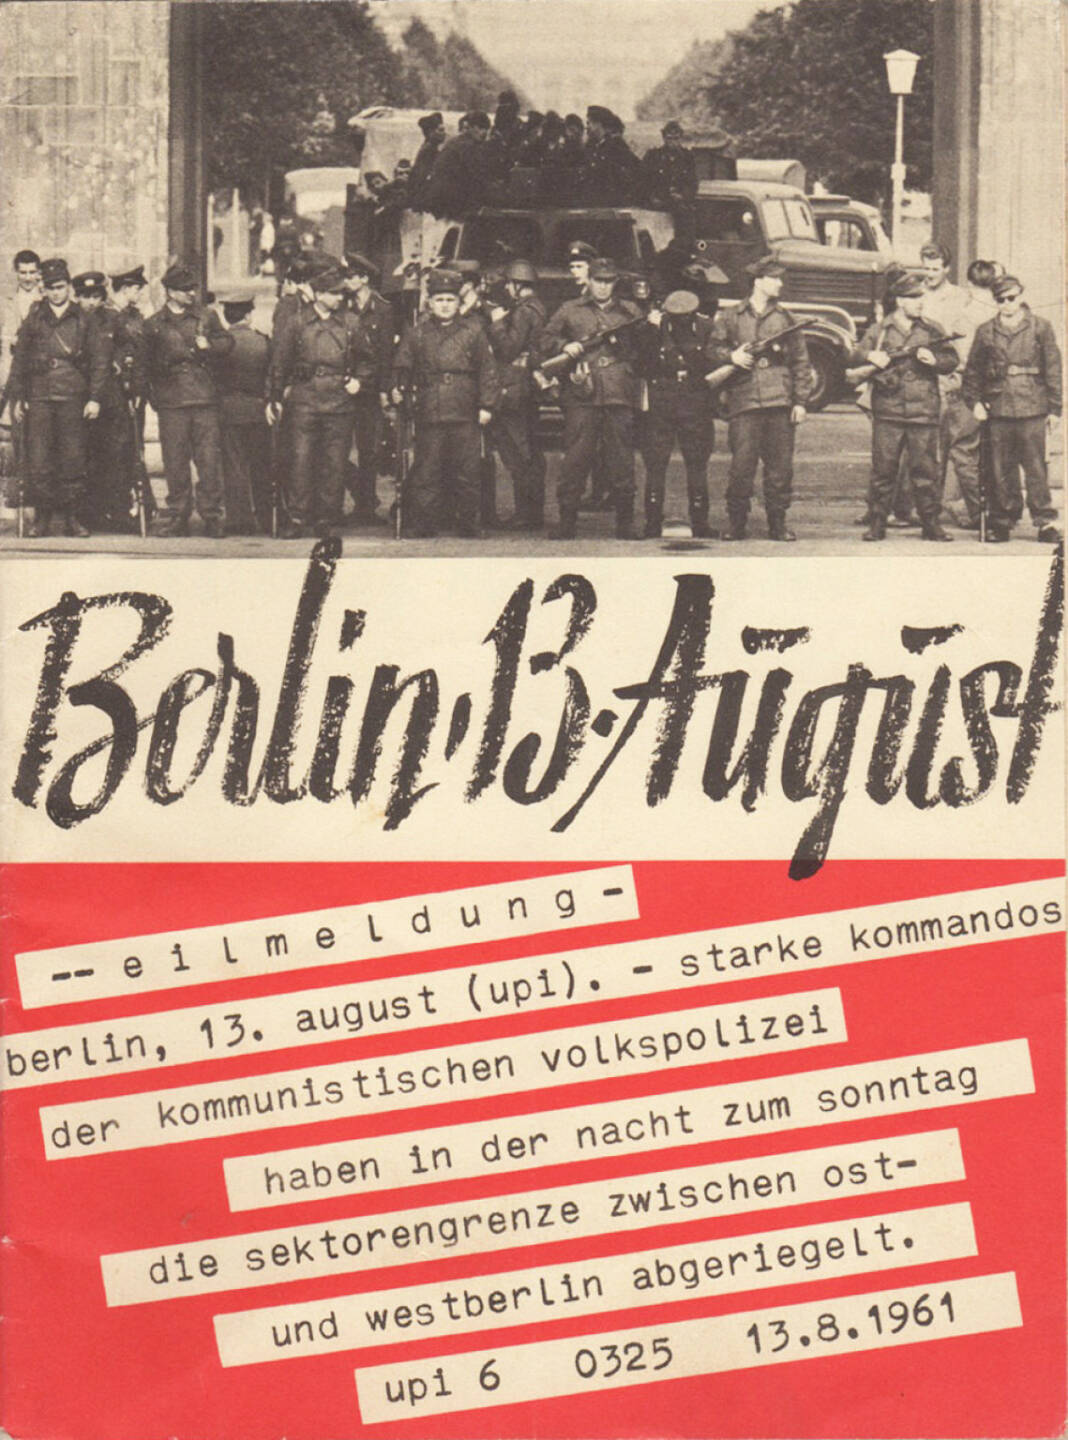 Bundesministerium für gesamtdeutsche Fragen - Berlin, 13. August, 1961, Cover - http://josefchladek.com/book/berlin_13_august_1961_-_bundesministerium_fur_gesamtdeutsche_fragen